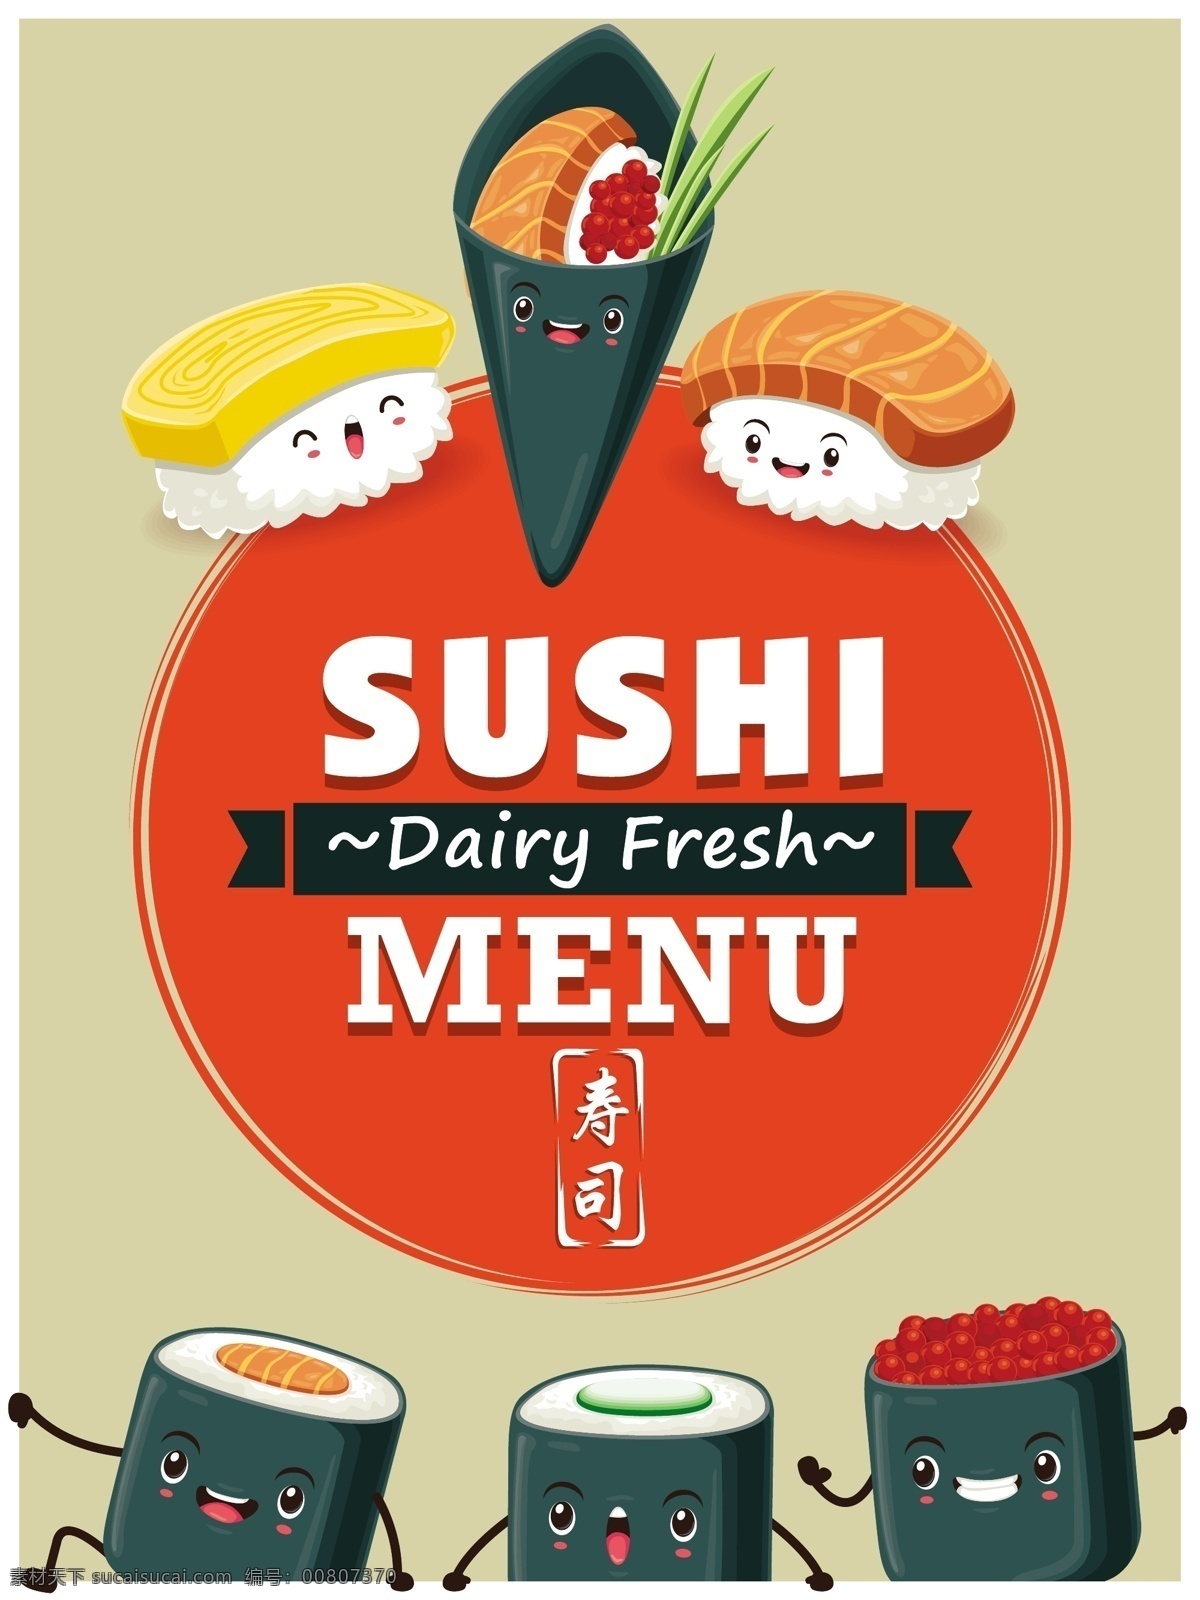 可爱 的卡 通 寿司 矢量 可爱寿司 时尚表情 卡通寿司 三文鱼 日本料理 日本美食 美味食物 餐饮美食 生活百科 矢量素材 红色